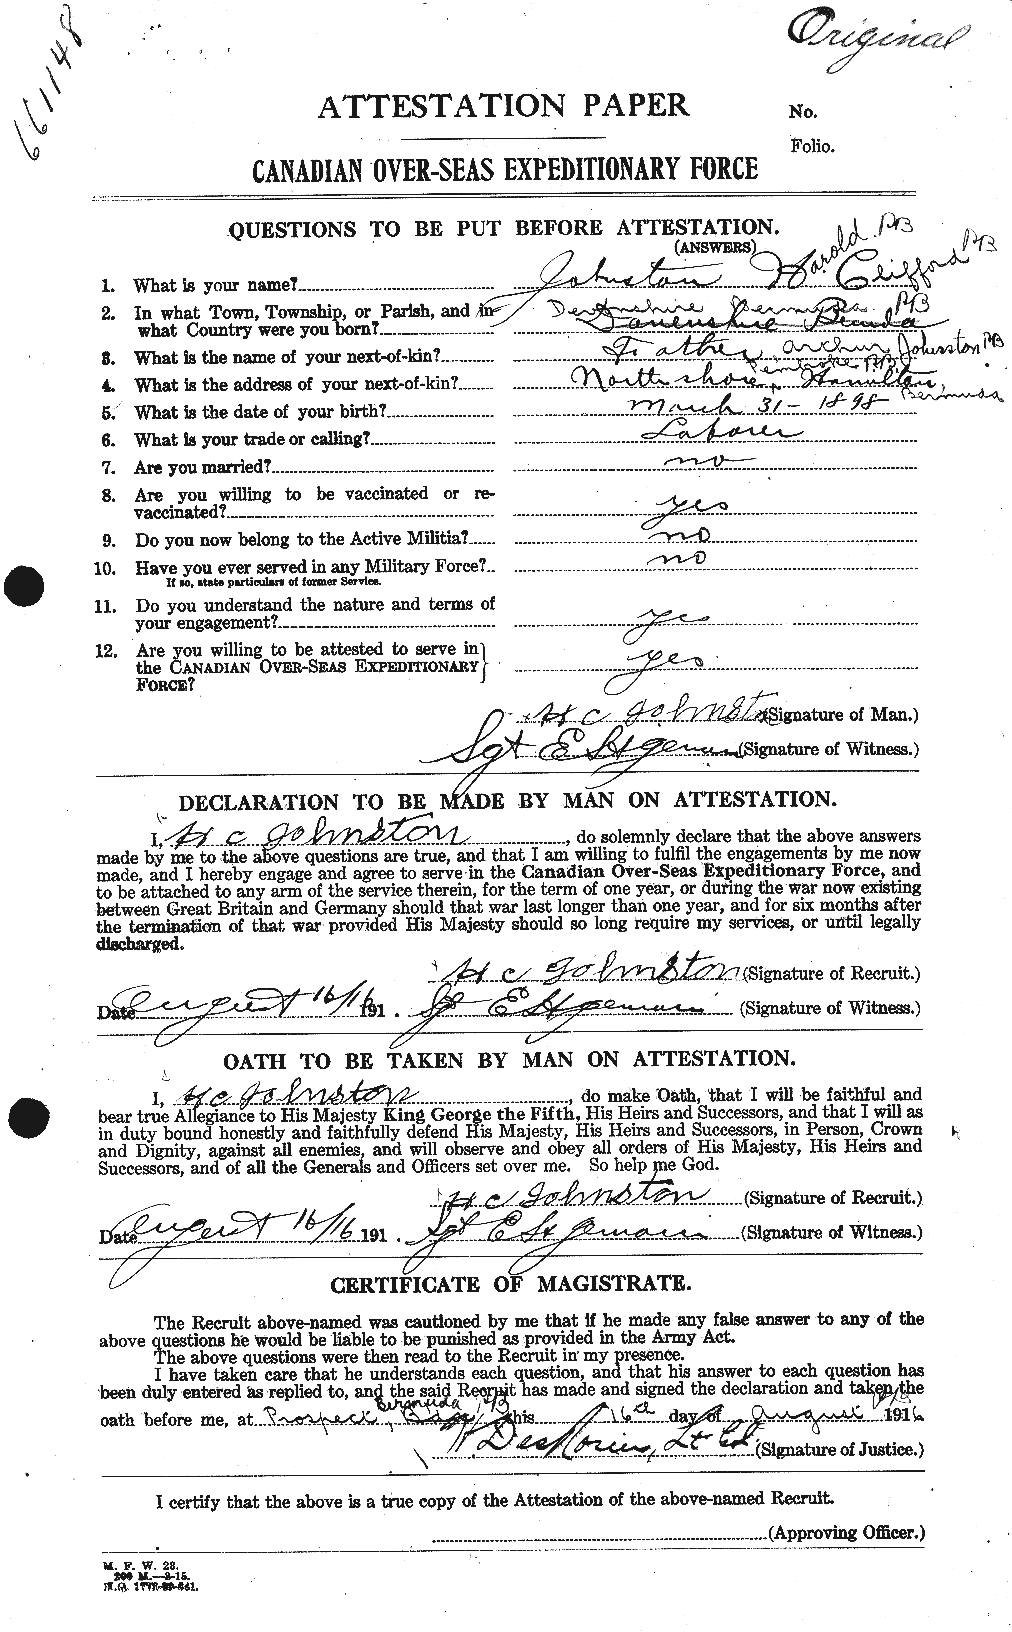 Dossiers du Personnel de la Première Guerre mondiale - CEC 419486a